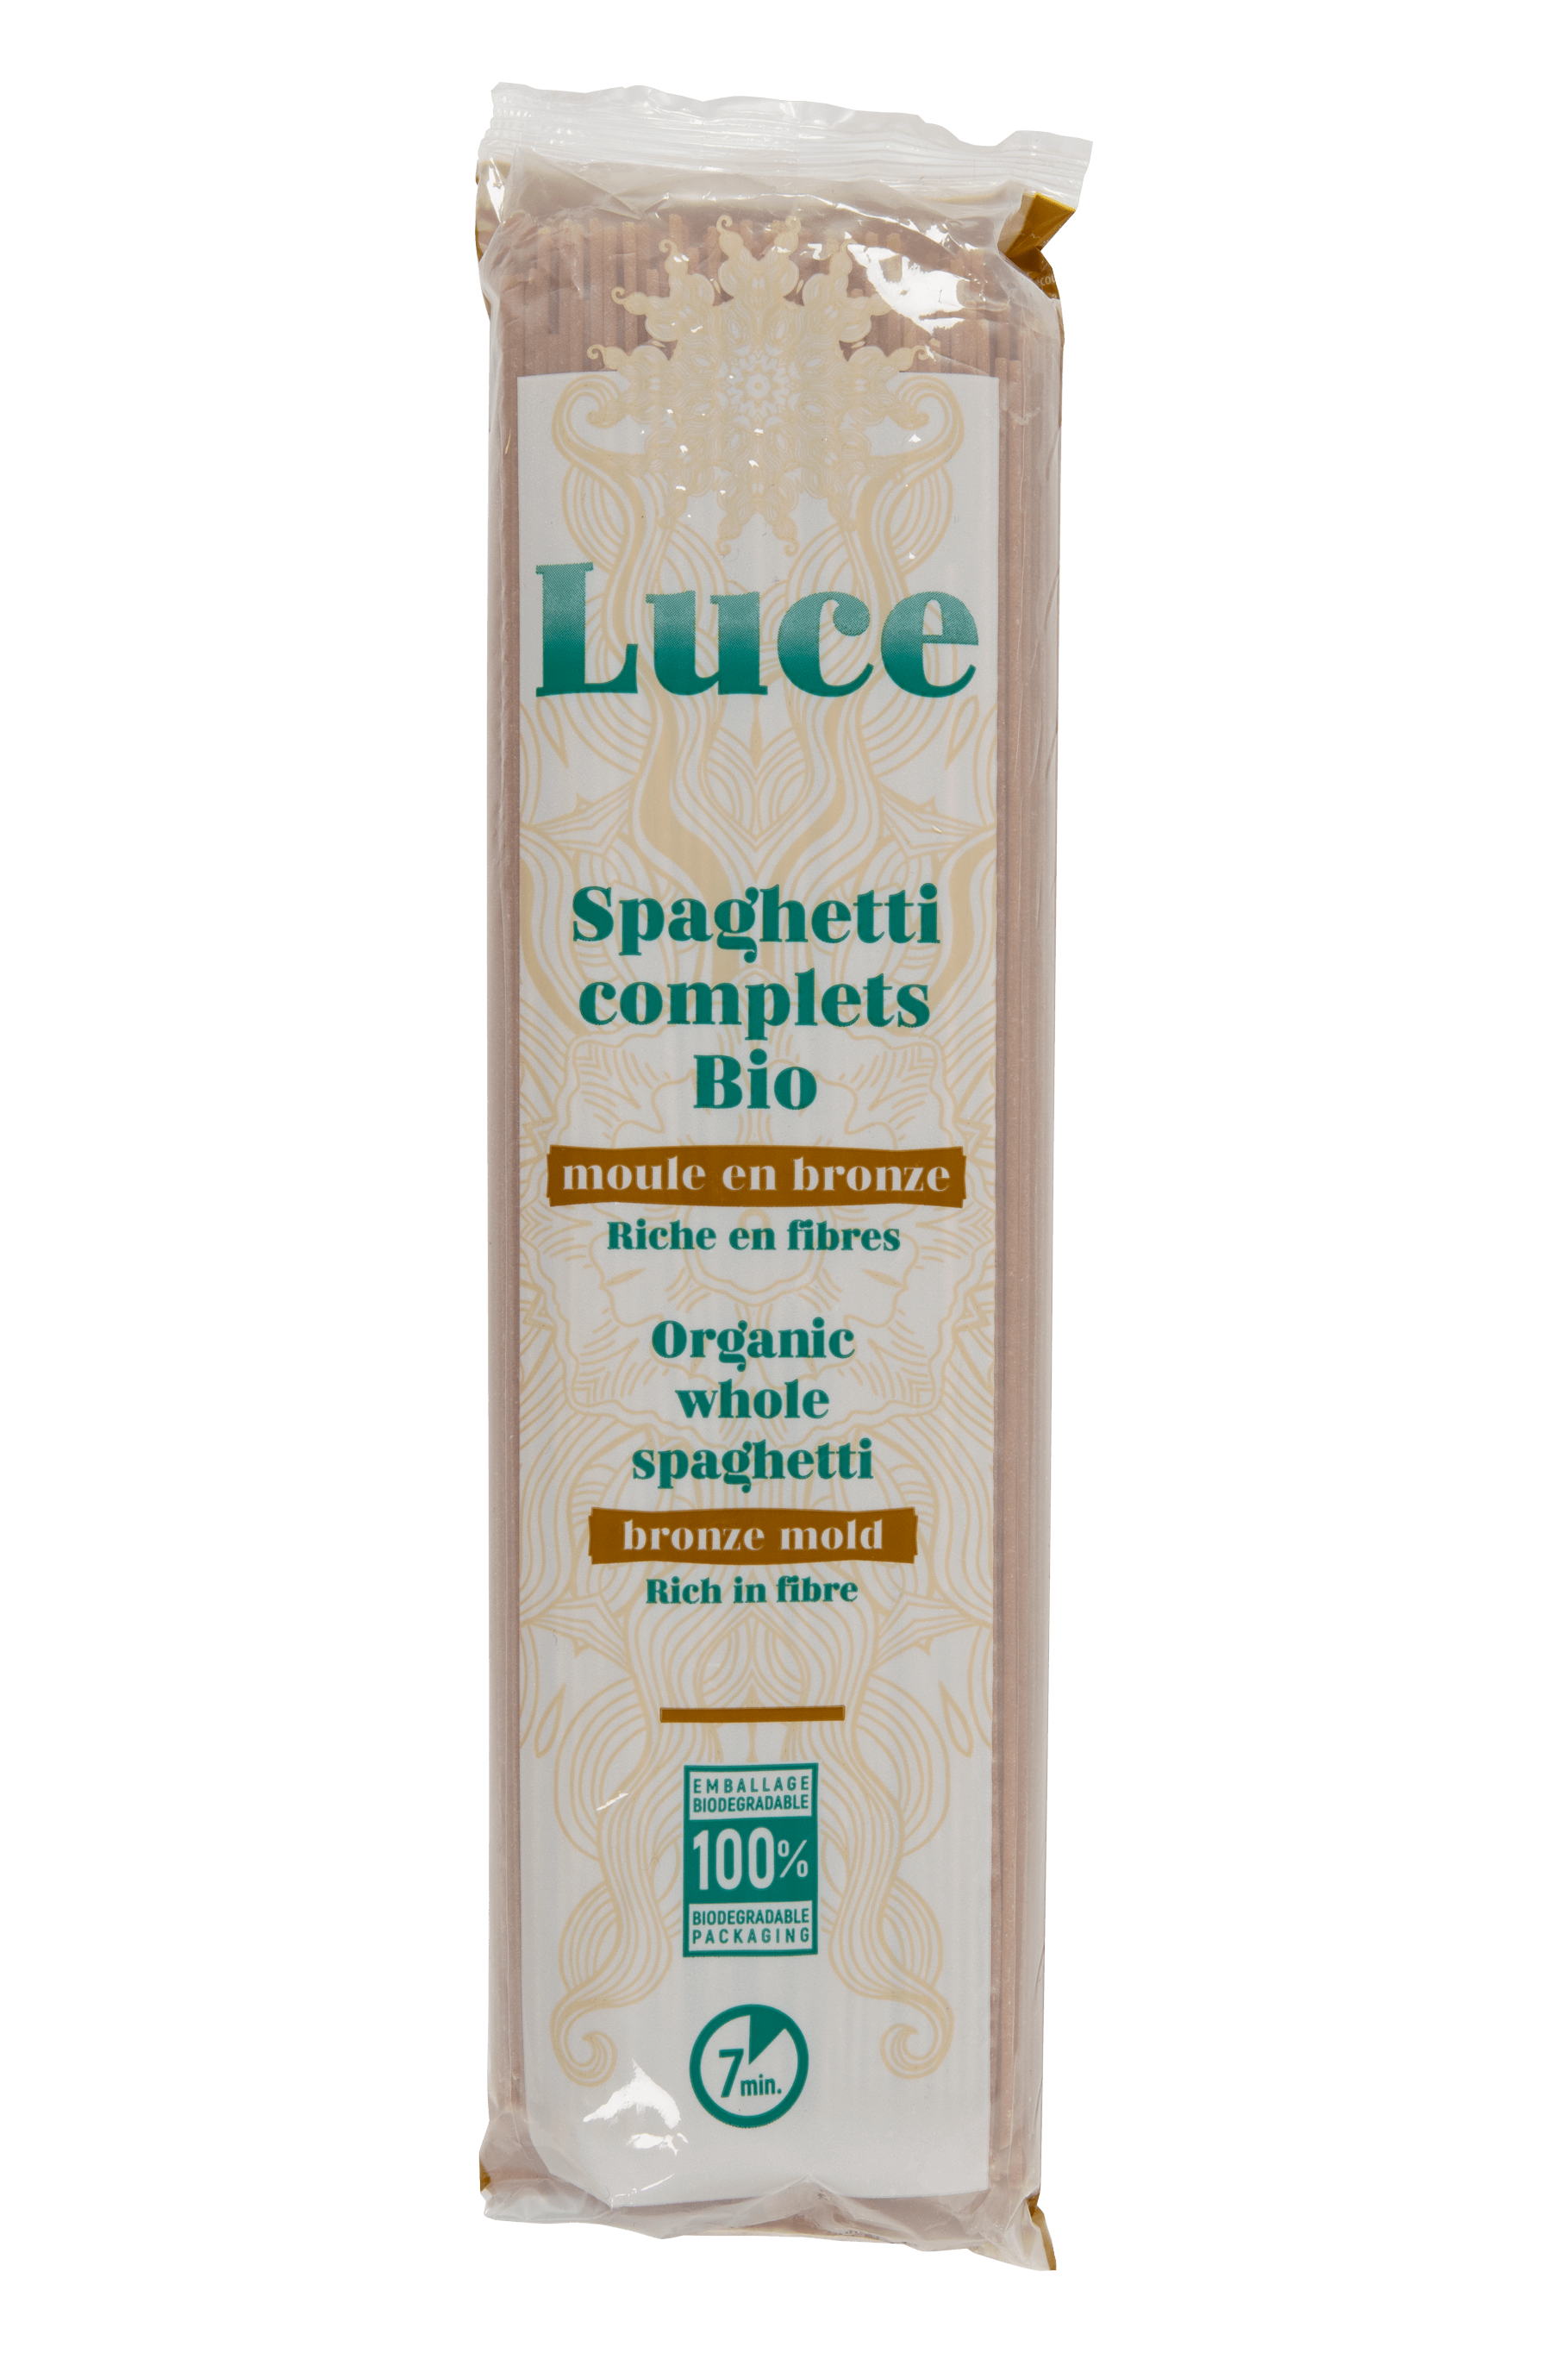 Luce Spaghetti volkoren bio 500g